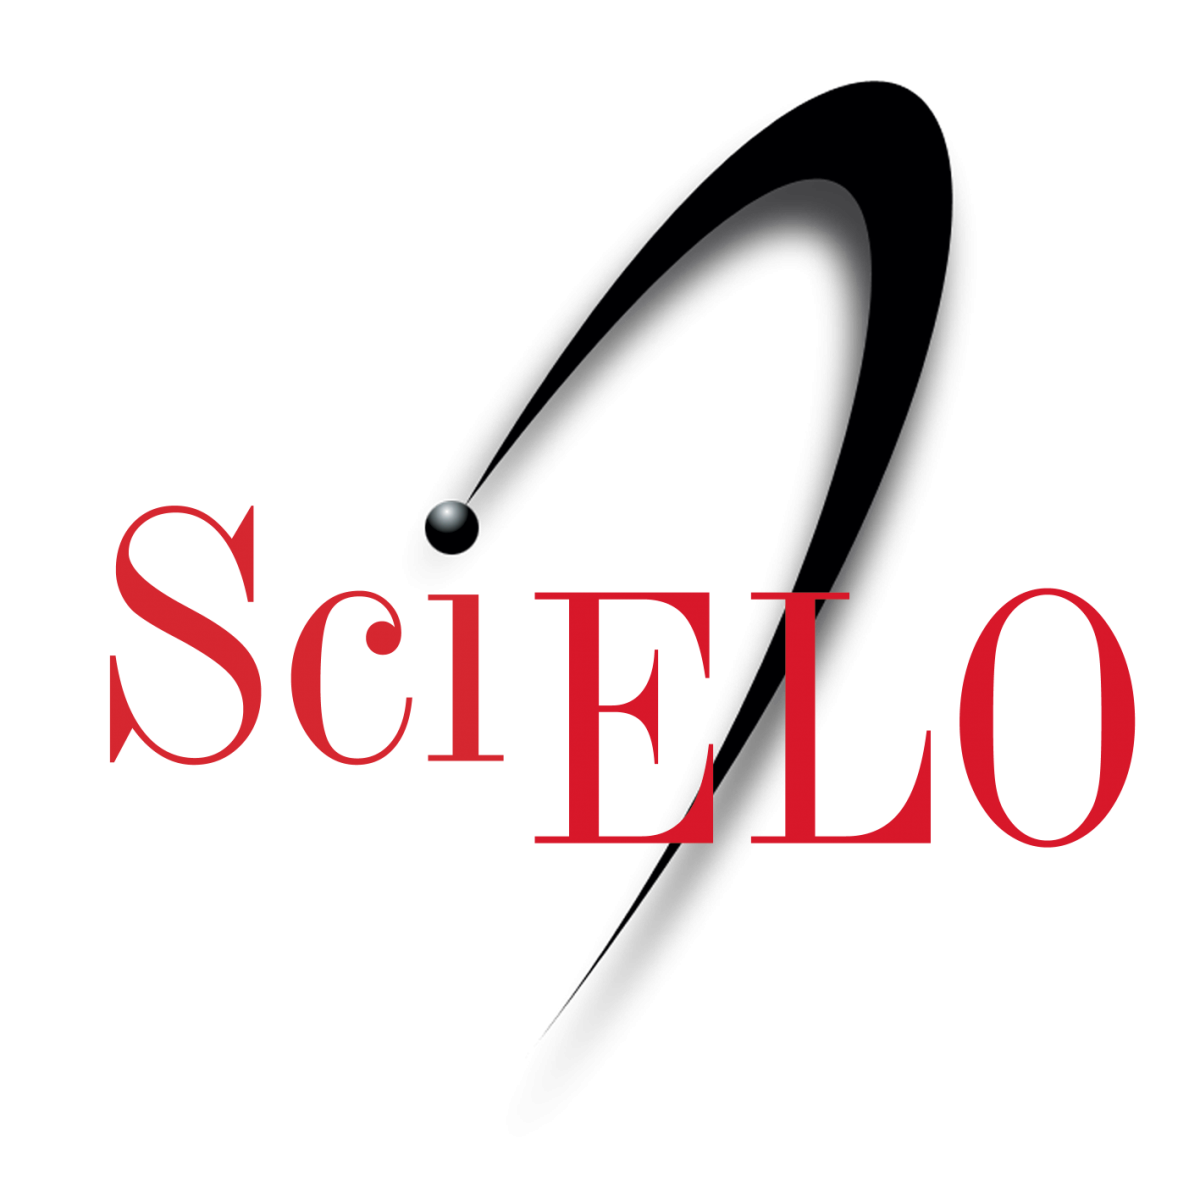 SciELO - EcuRed